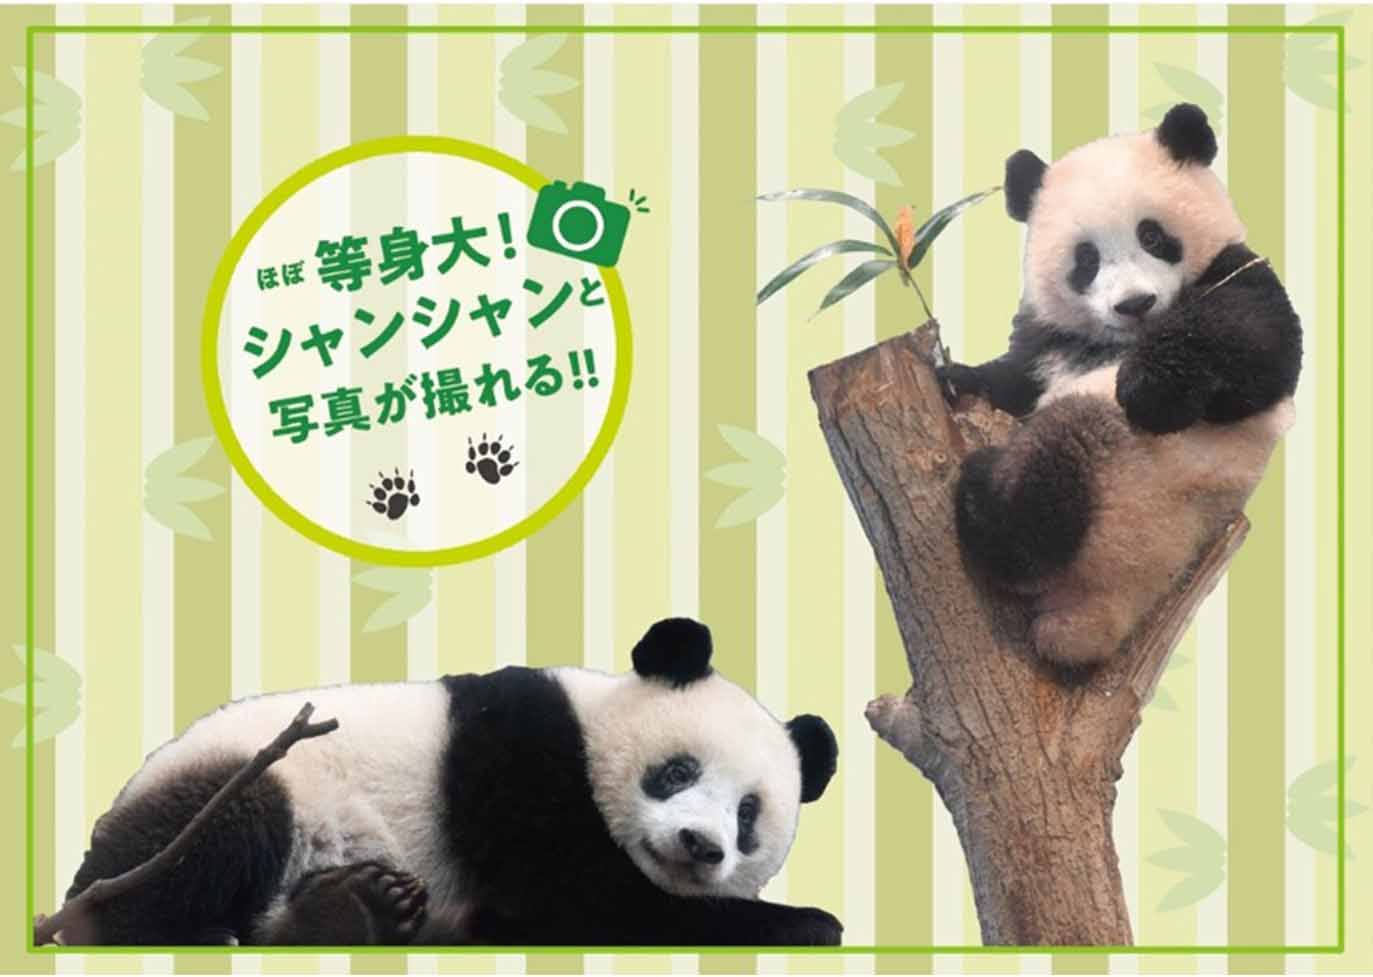 上野動物園 シャンシャン4歳商品 - キャラクターグッズ